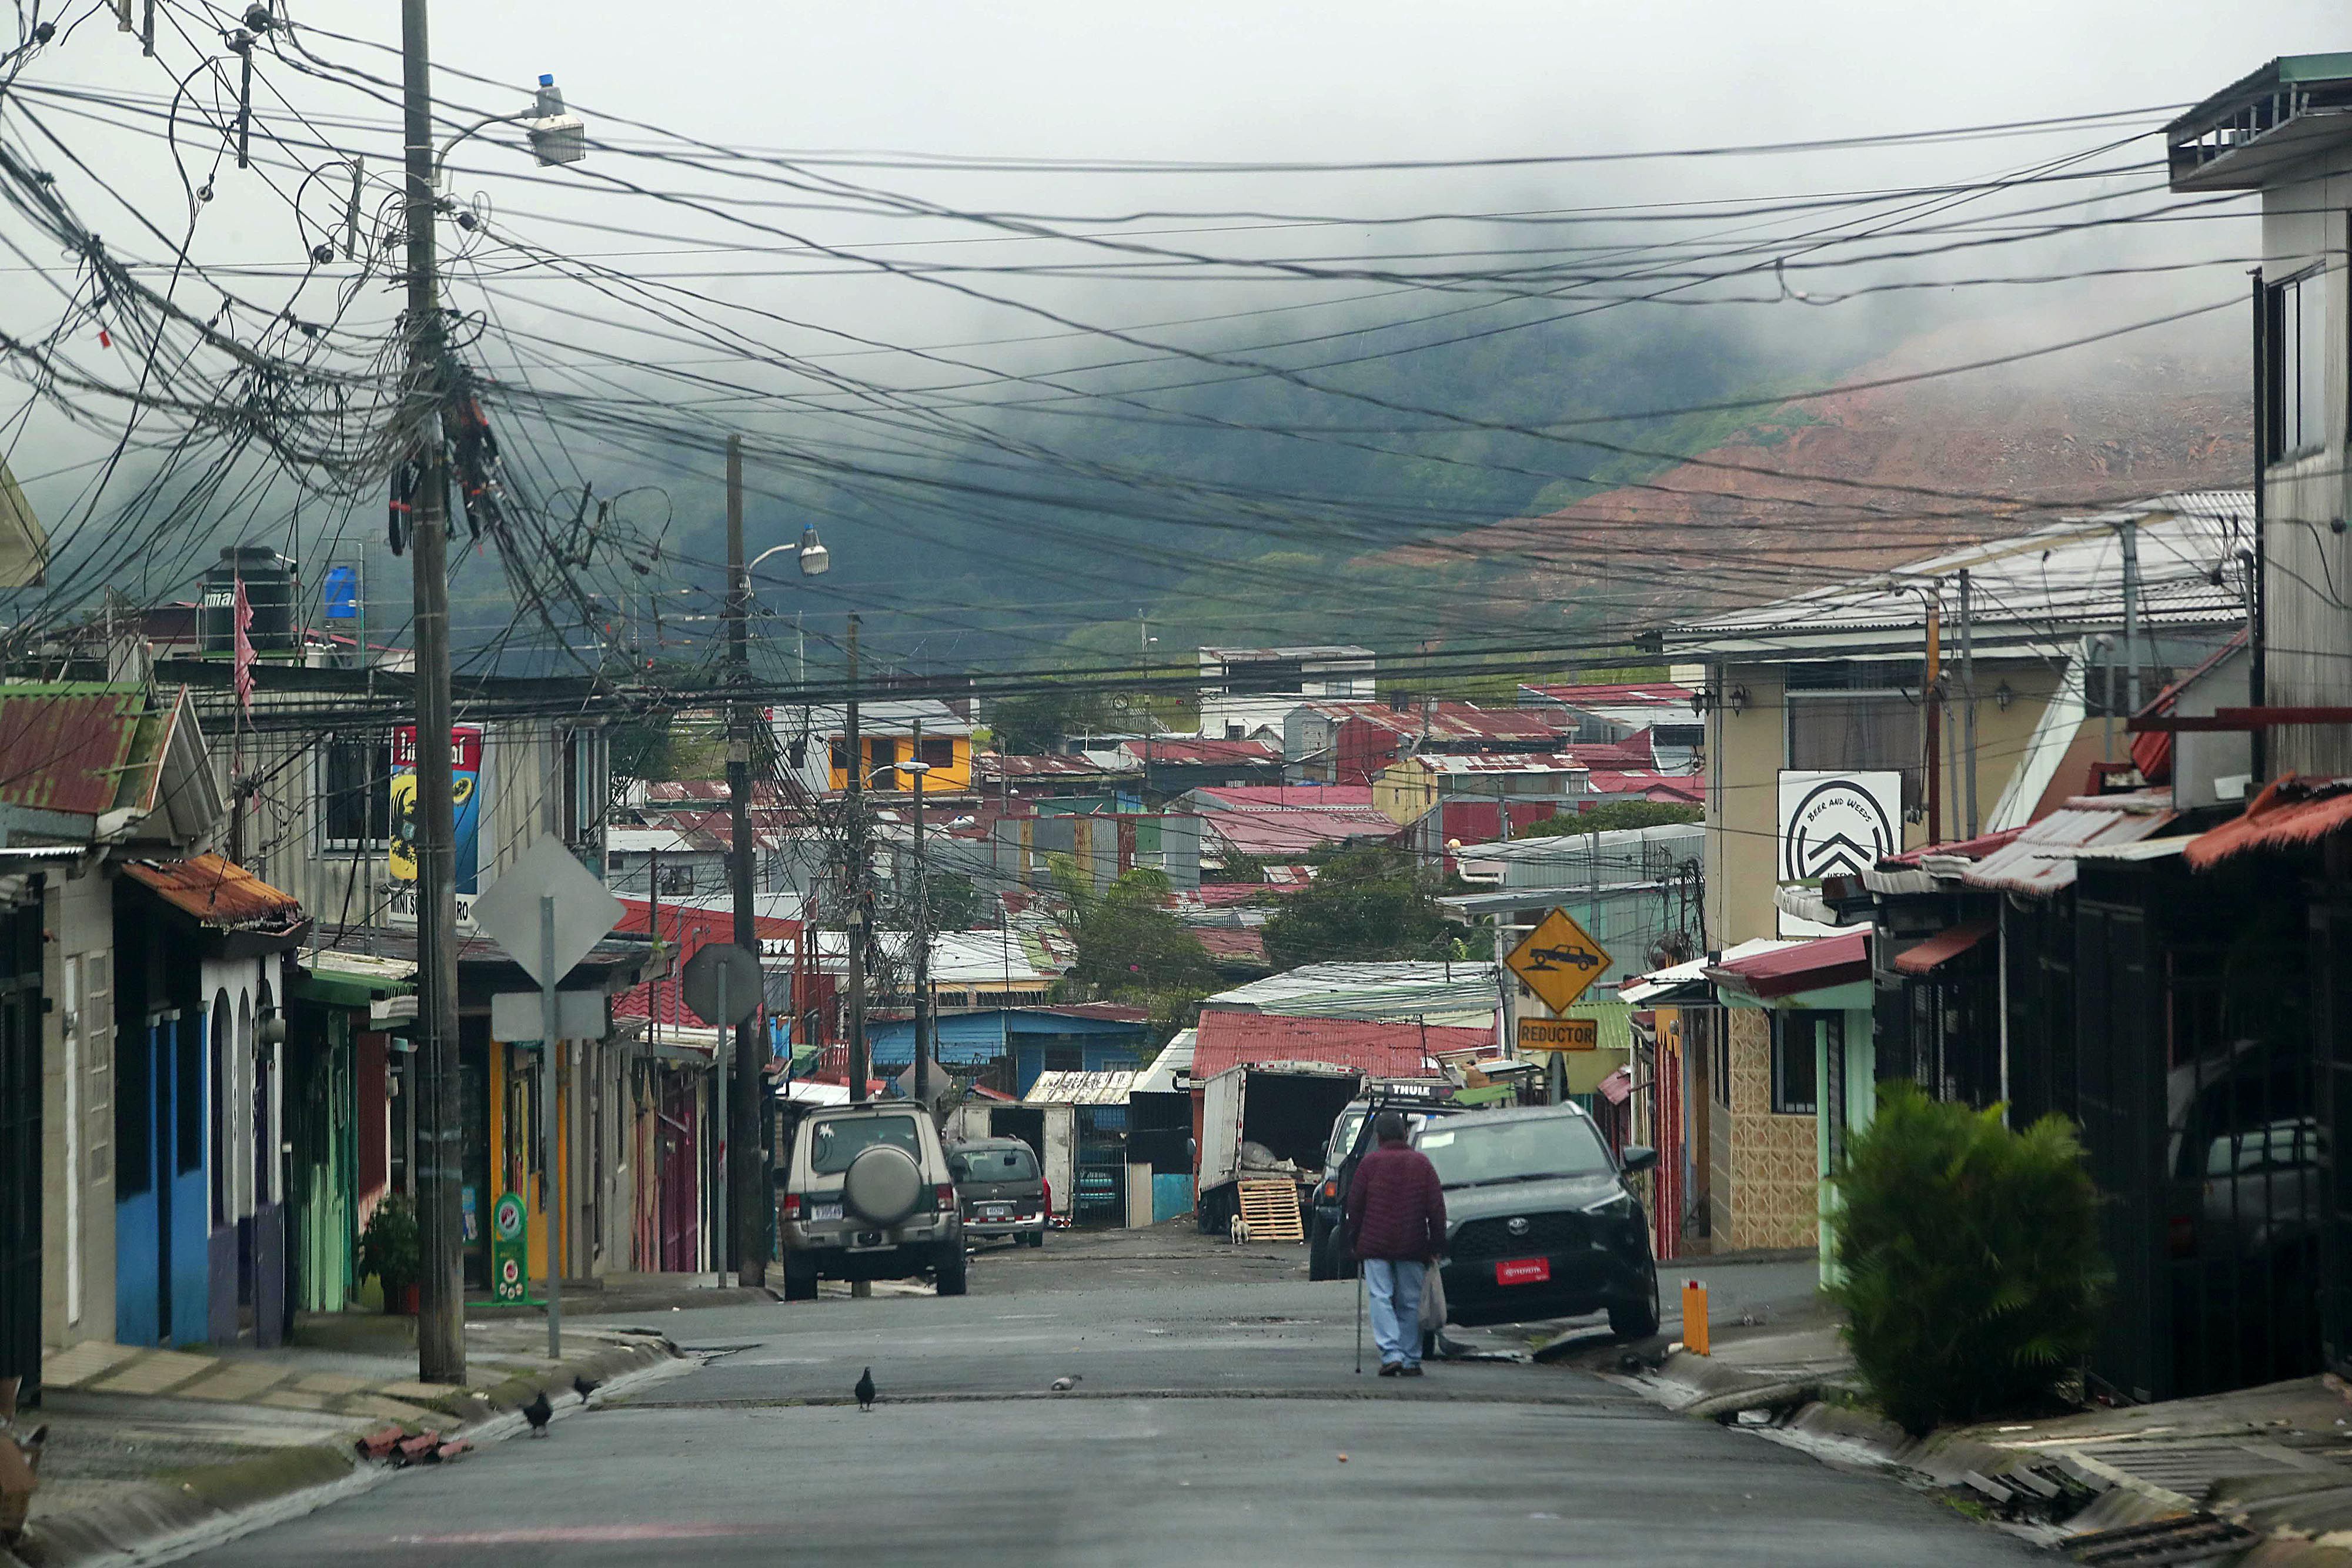 Llanos de Santa Lucía, uno de los lugares que se han vuelto muy inseguros, donde se han dado balaceras e incluso ha habido muertes relacionadas con narcotráfico. Foto: Rafael Pacheco